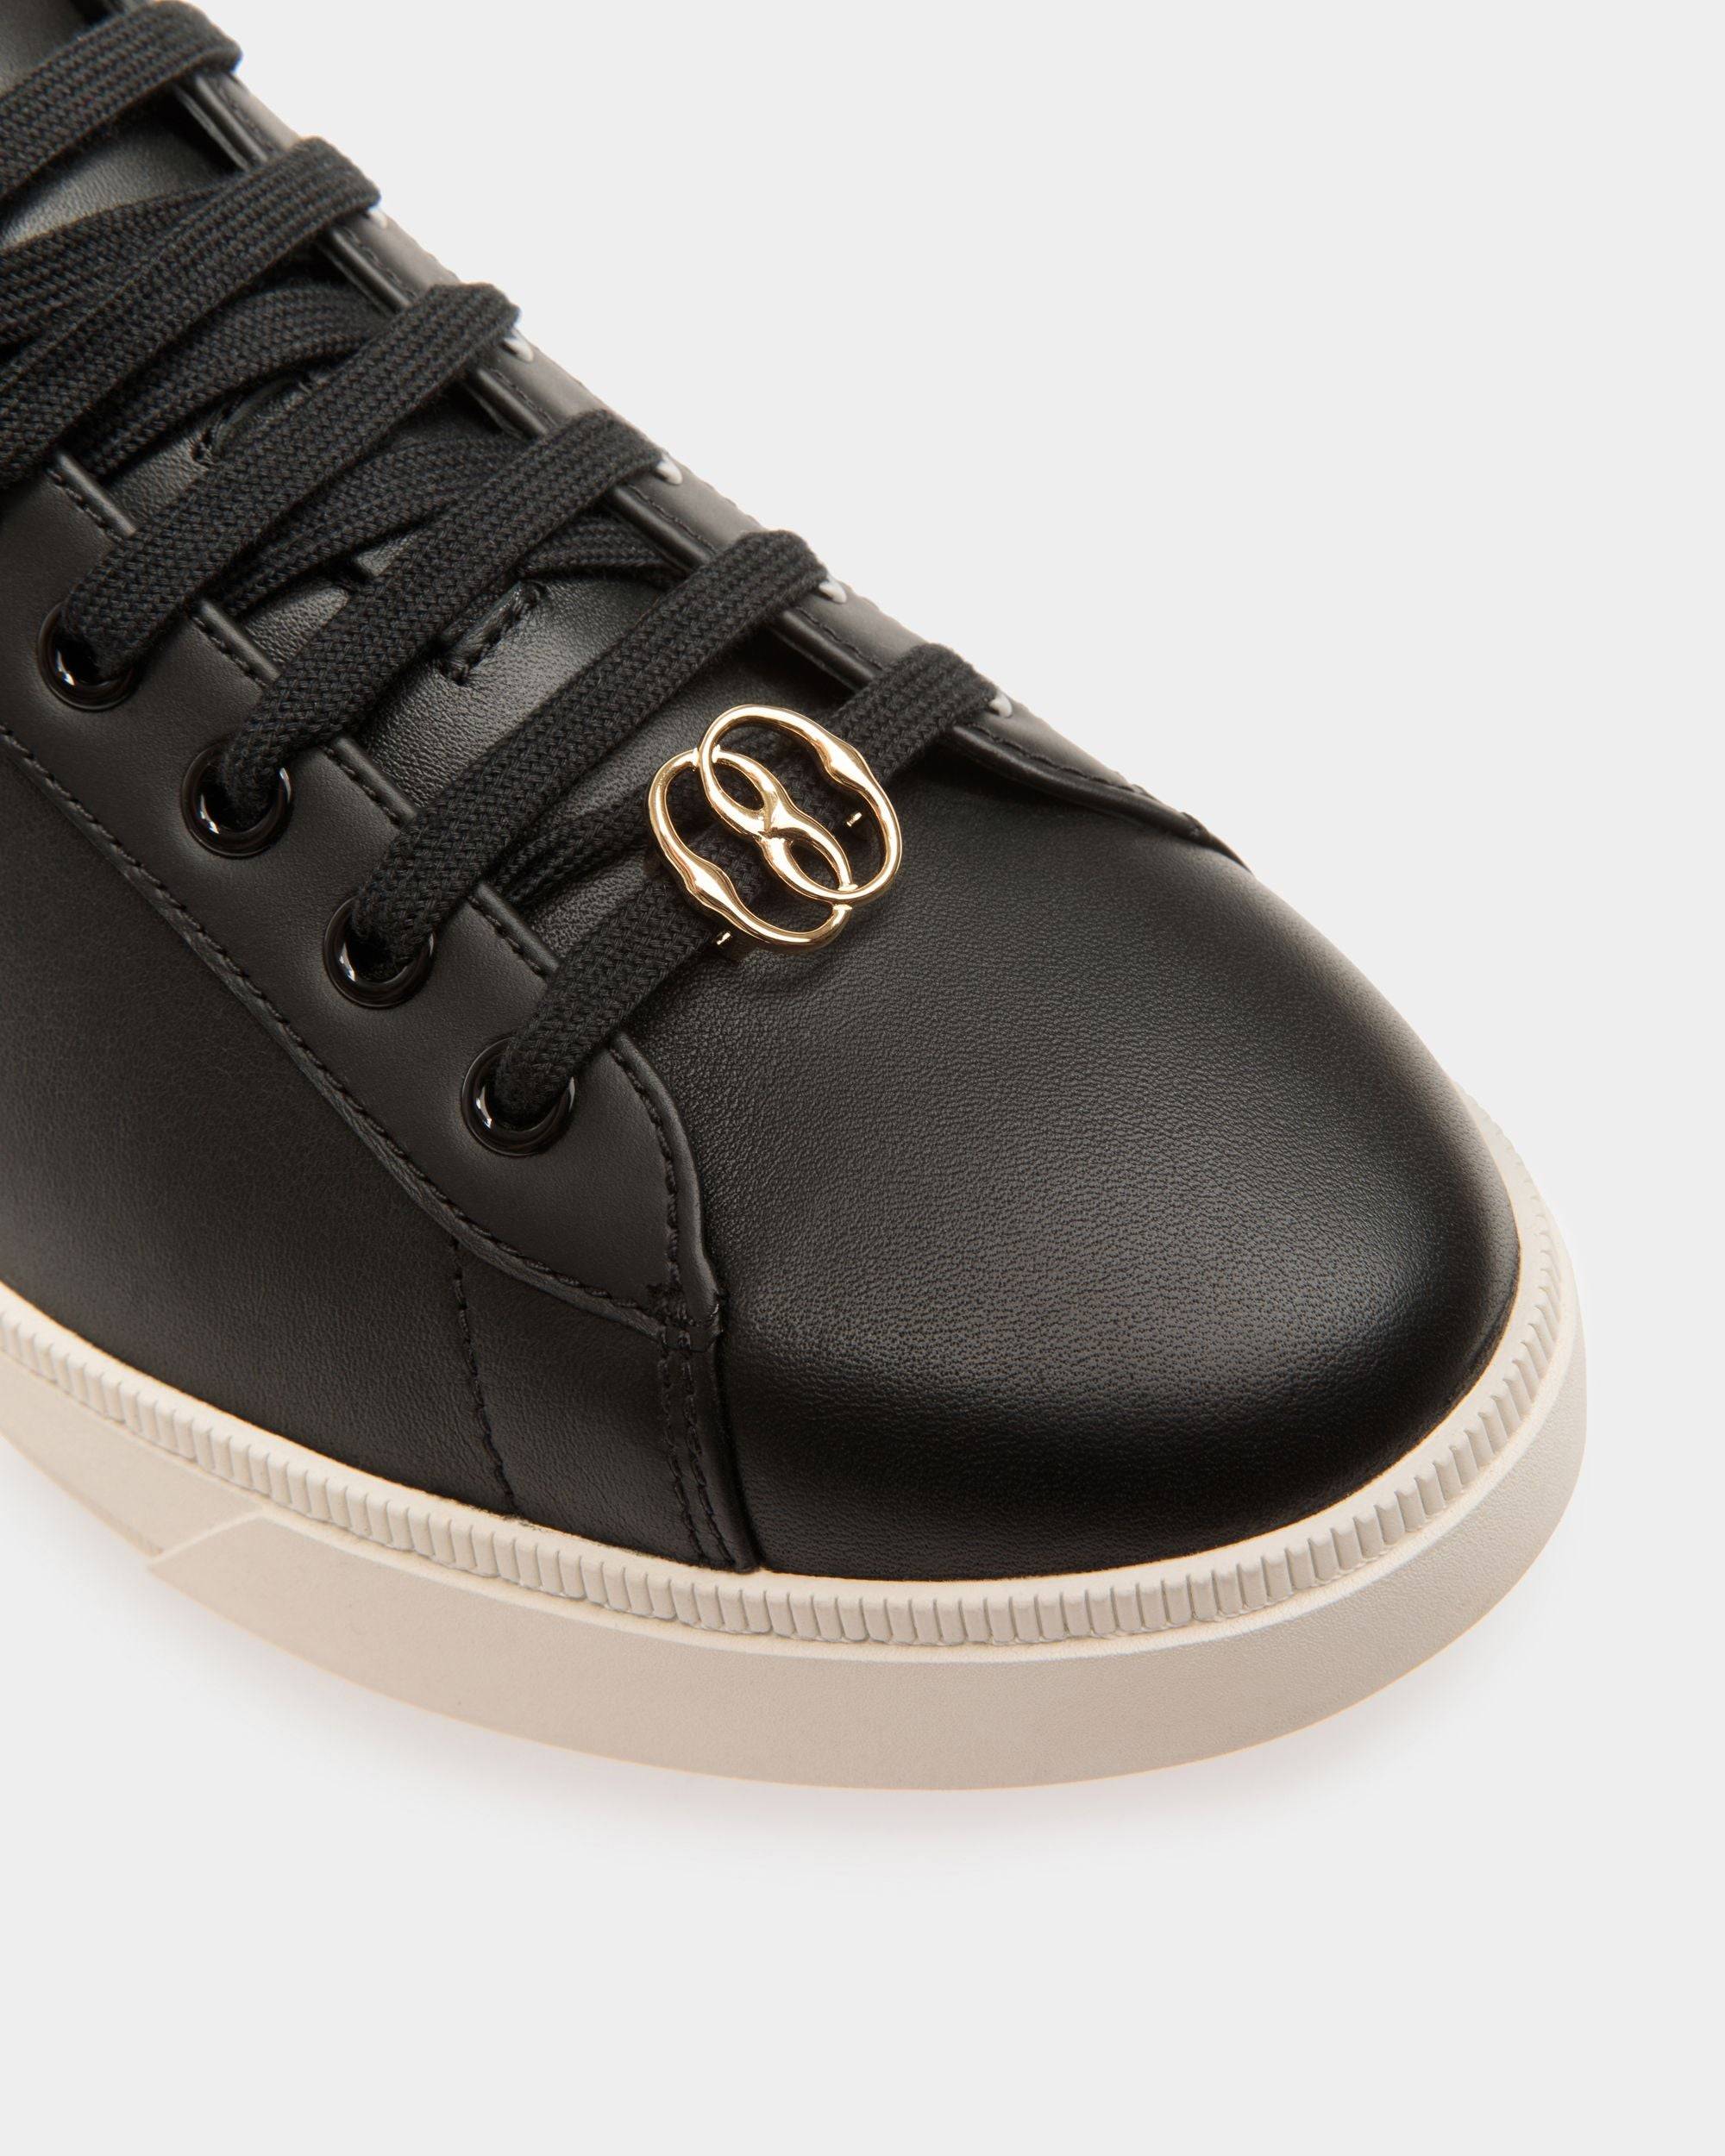 Ryver | Sneaker für Herren | Schwarzes und weißes Leder | Bally | Still Life Detail